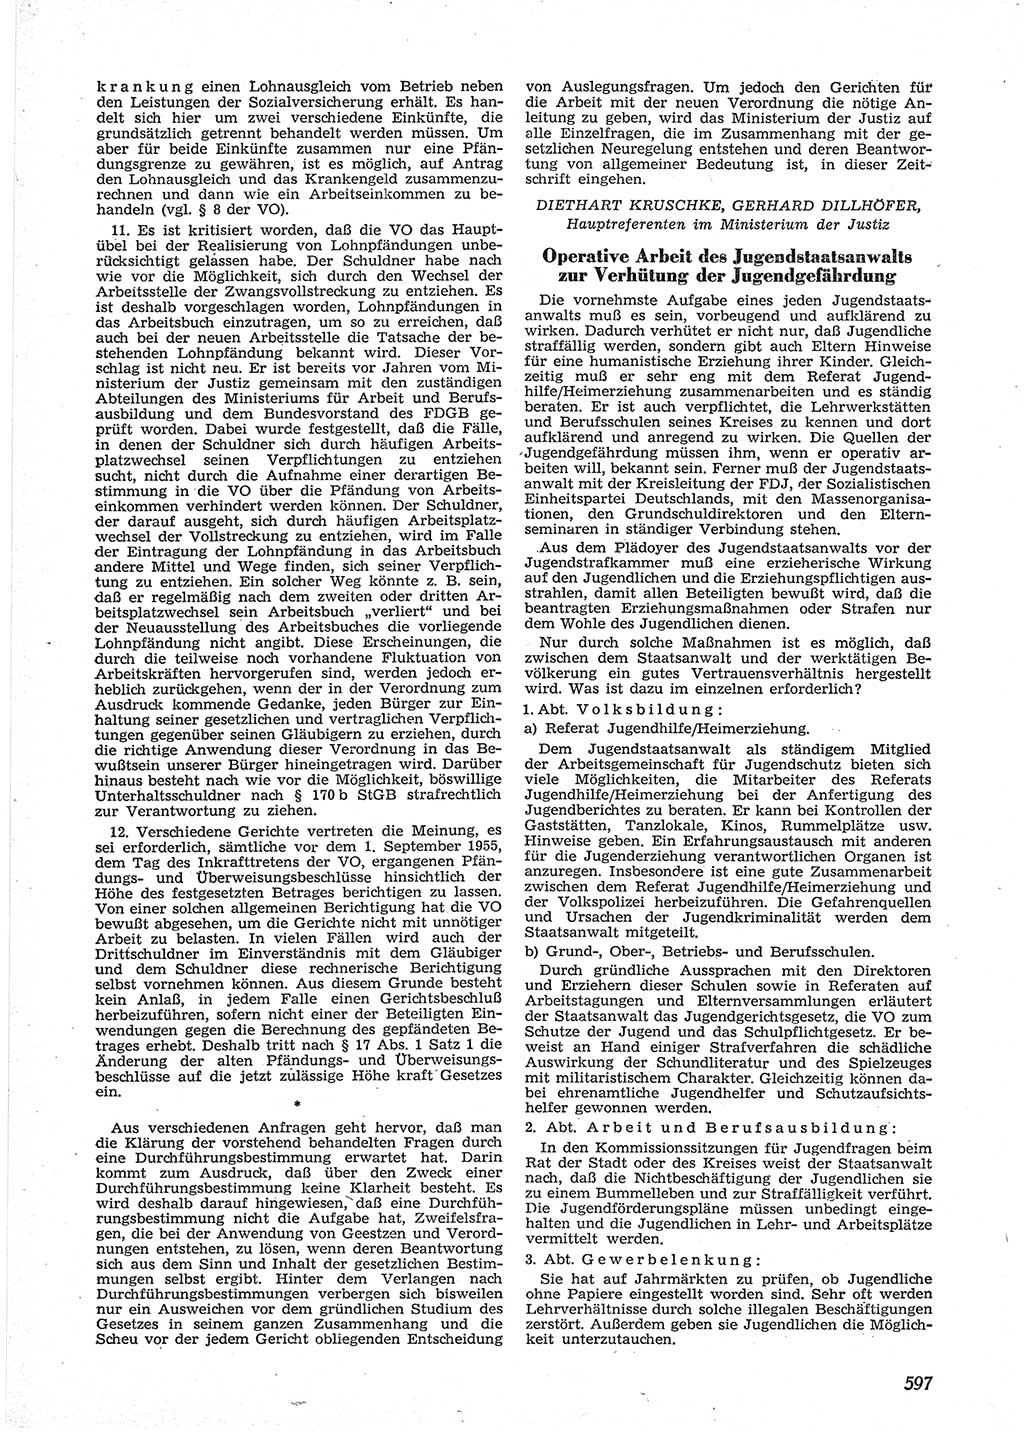 Neue Justiz (NJ), Zeitschrift für Recht und Rechtswissenschaft [Deutsche Demokratische Republik (DDR)], 9. Jahrgang 1955, Seite 597 (NJ DDR 1955, S. 597)